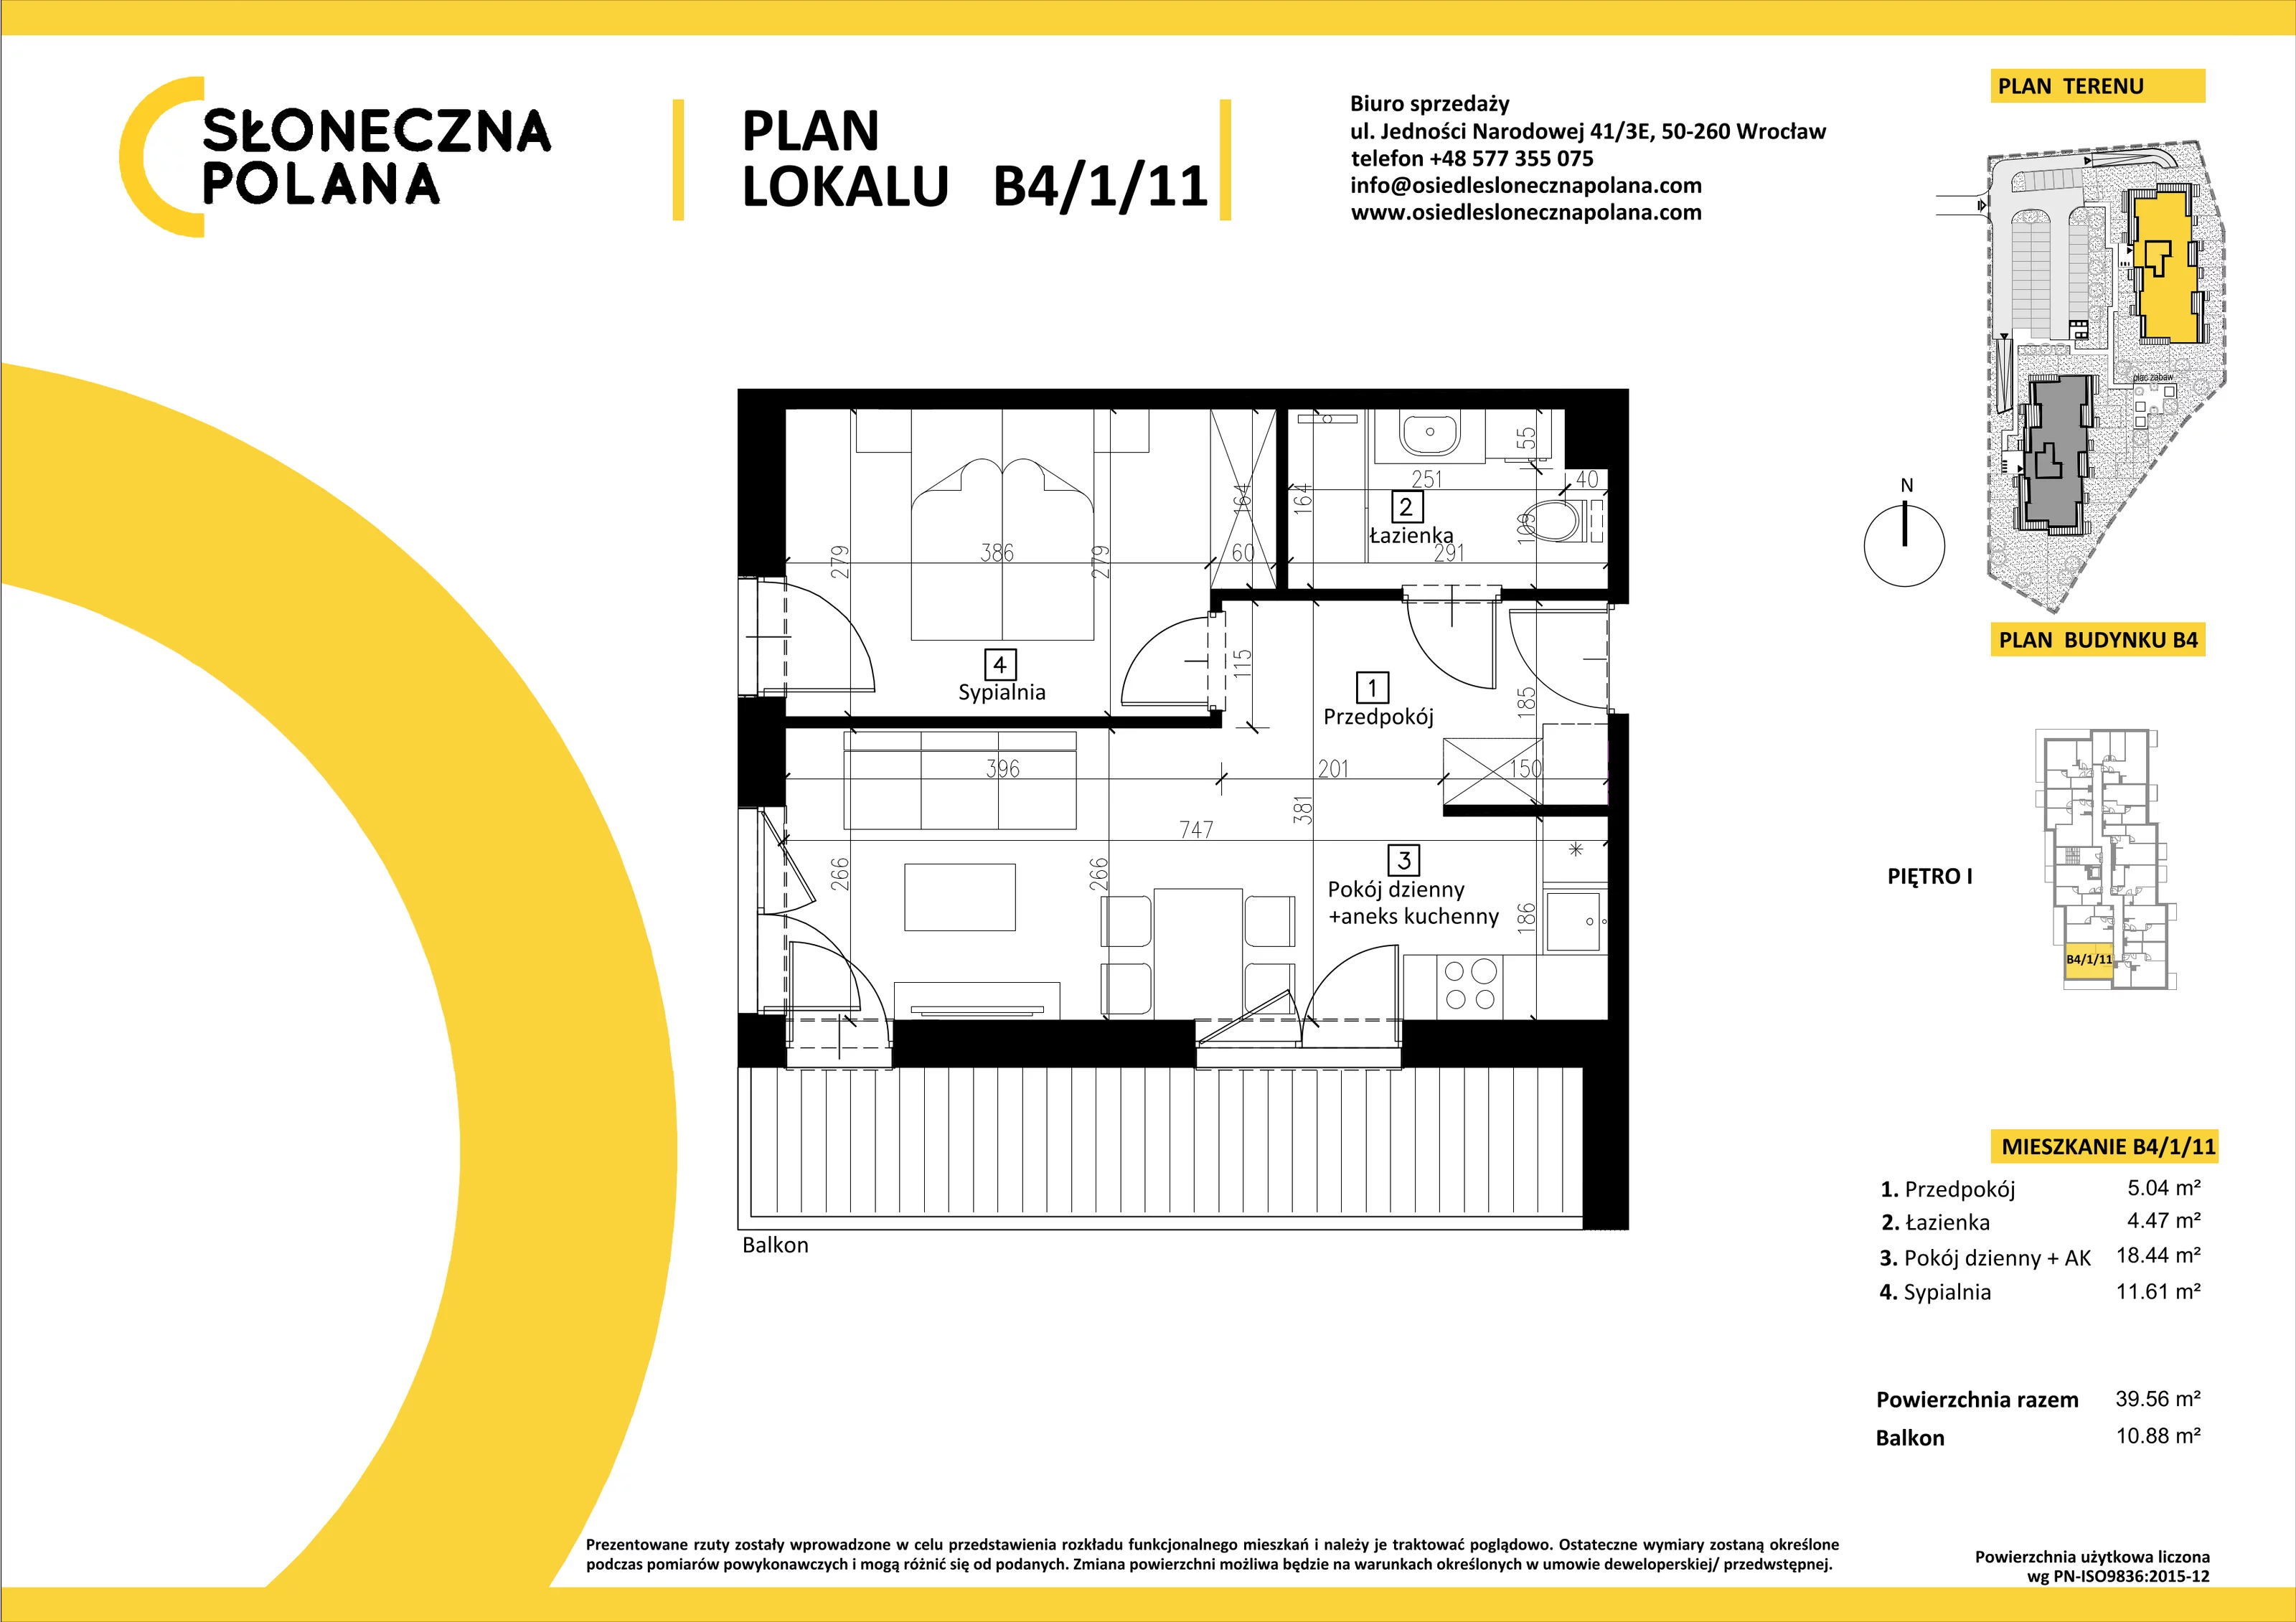 Mieszkanie 39,56 m², piętro 1, oferta nr B4/1/11, Słoneczna Polana, Kudowa-Zdrój, ul. Bluszczowa